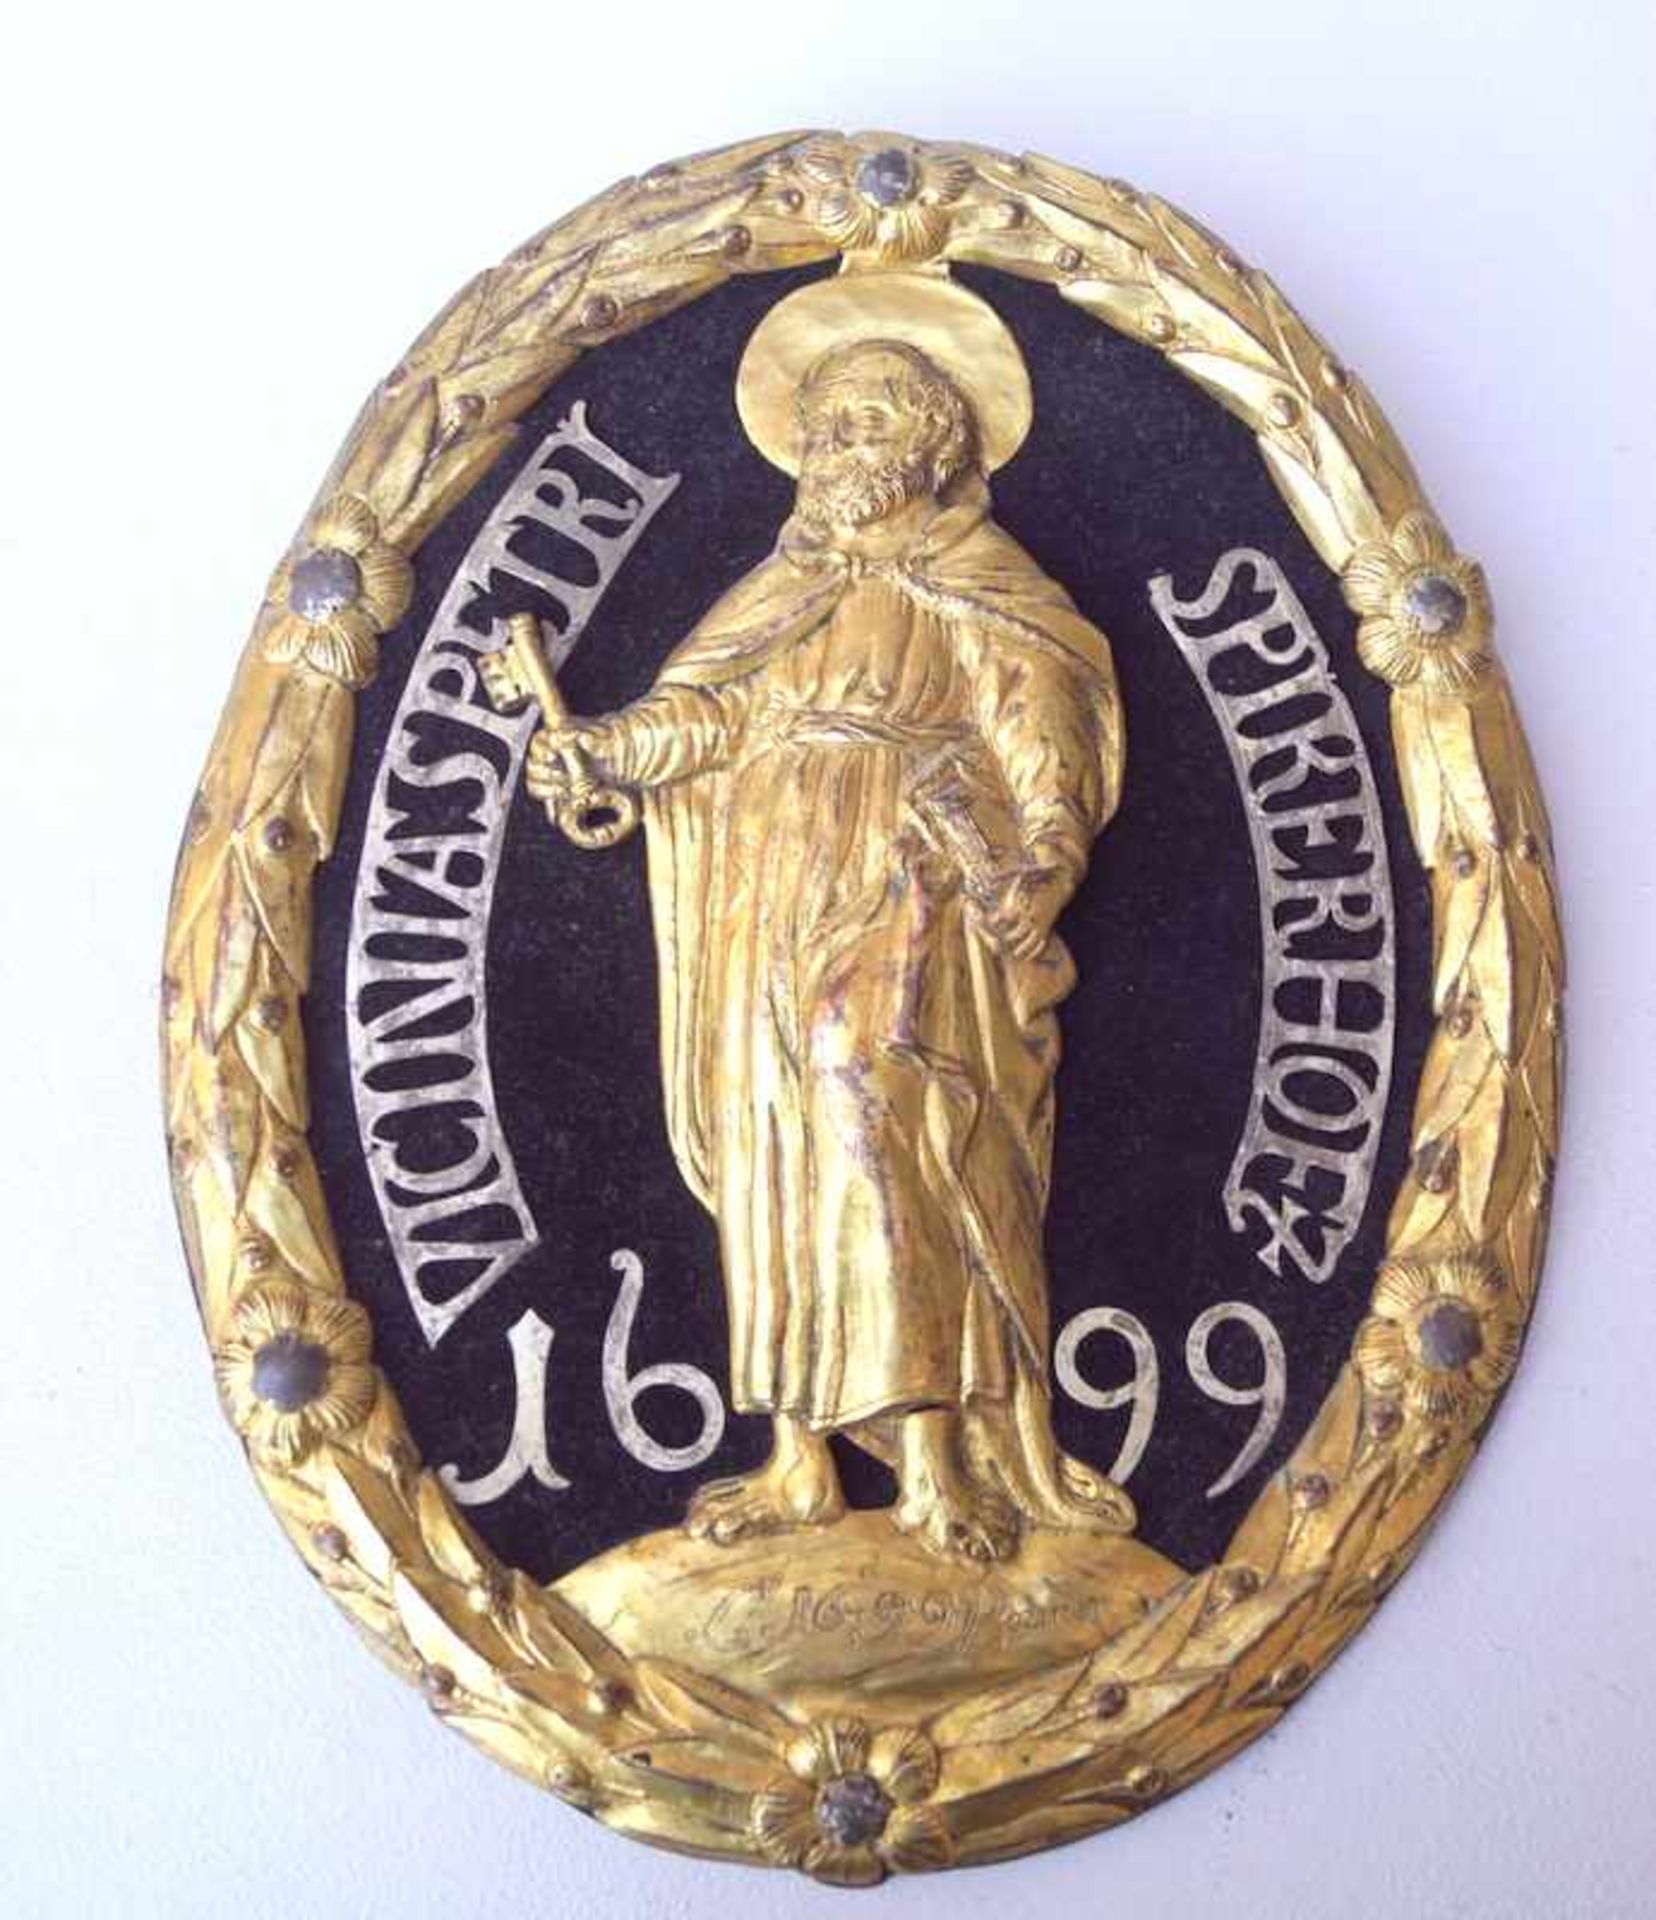 Wappenschild der St. Petri Bruderschaft Spiekerhof in Münster von 1699Zur Geschichte: Das